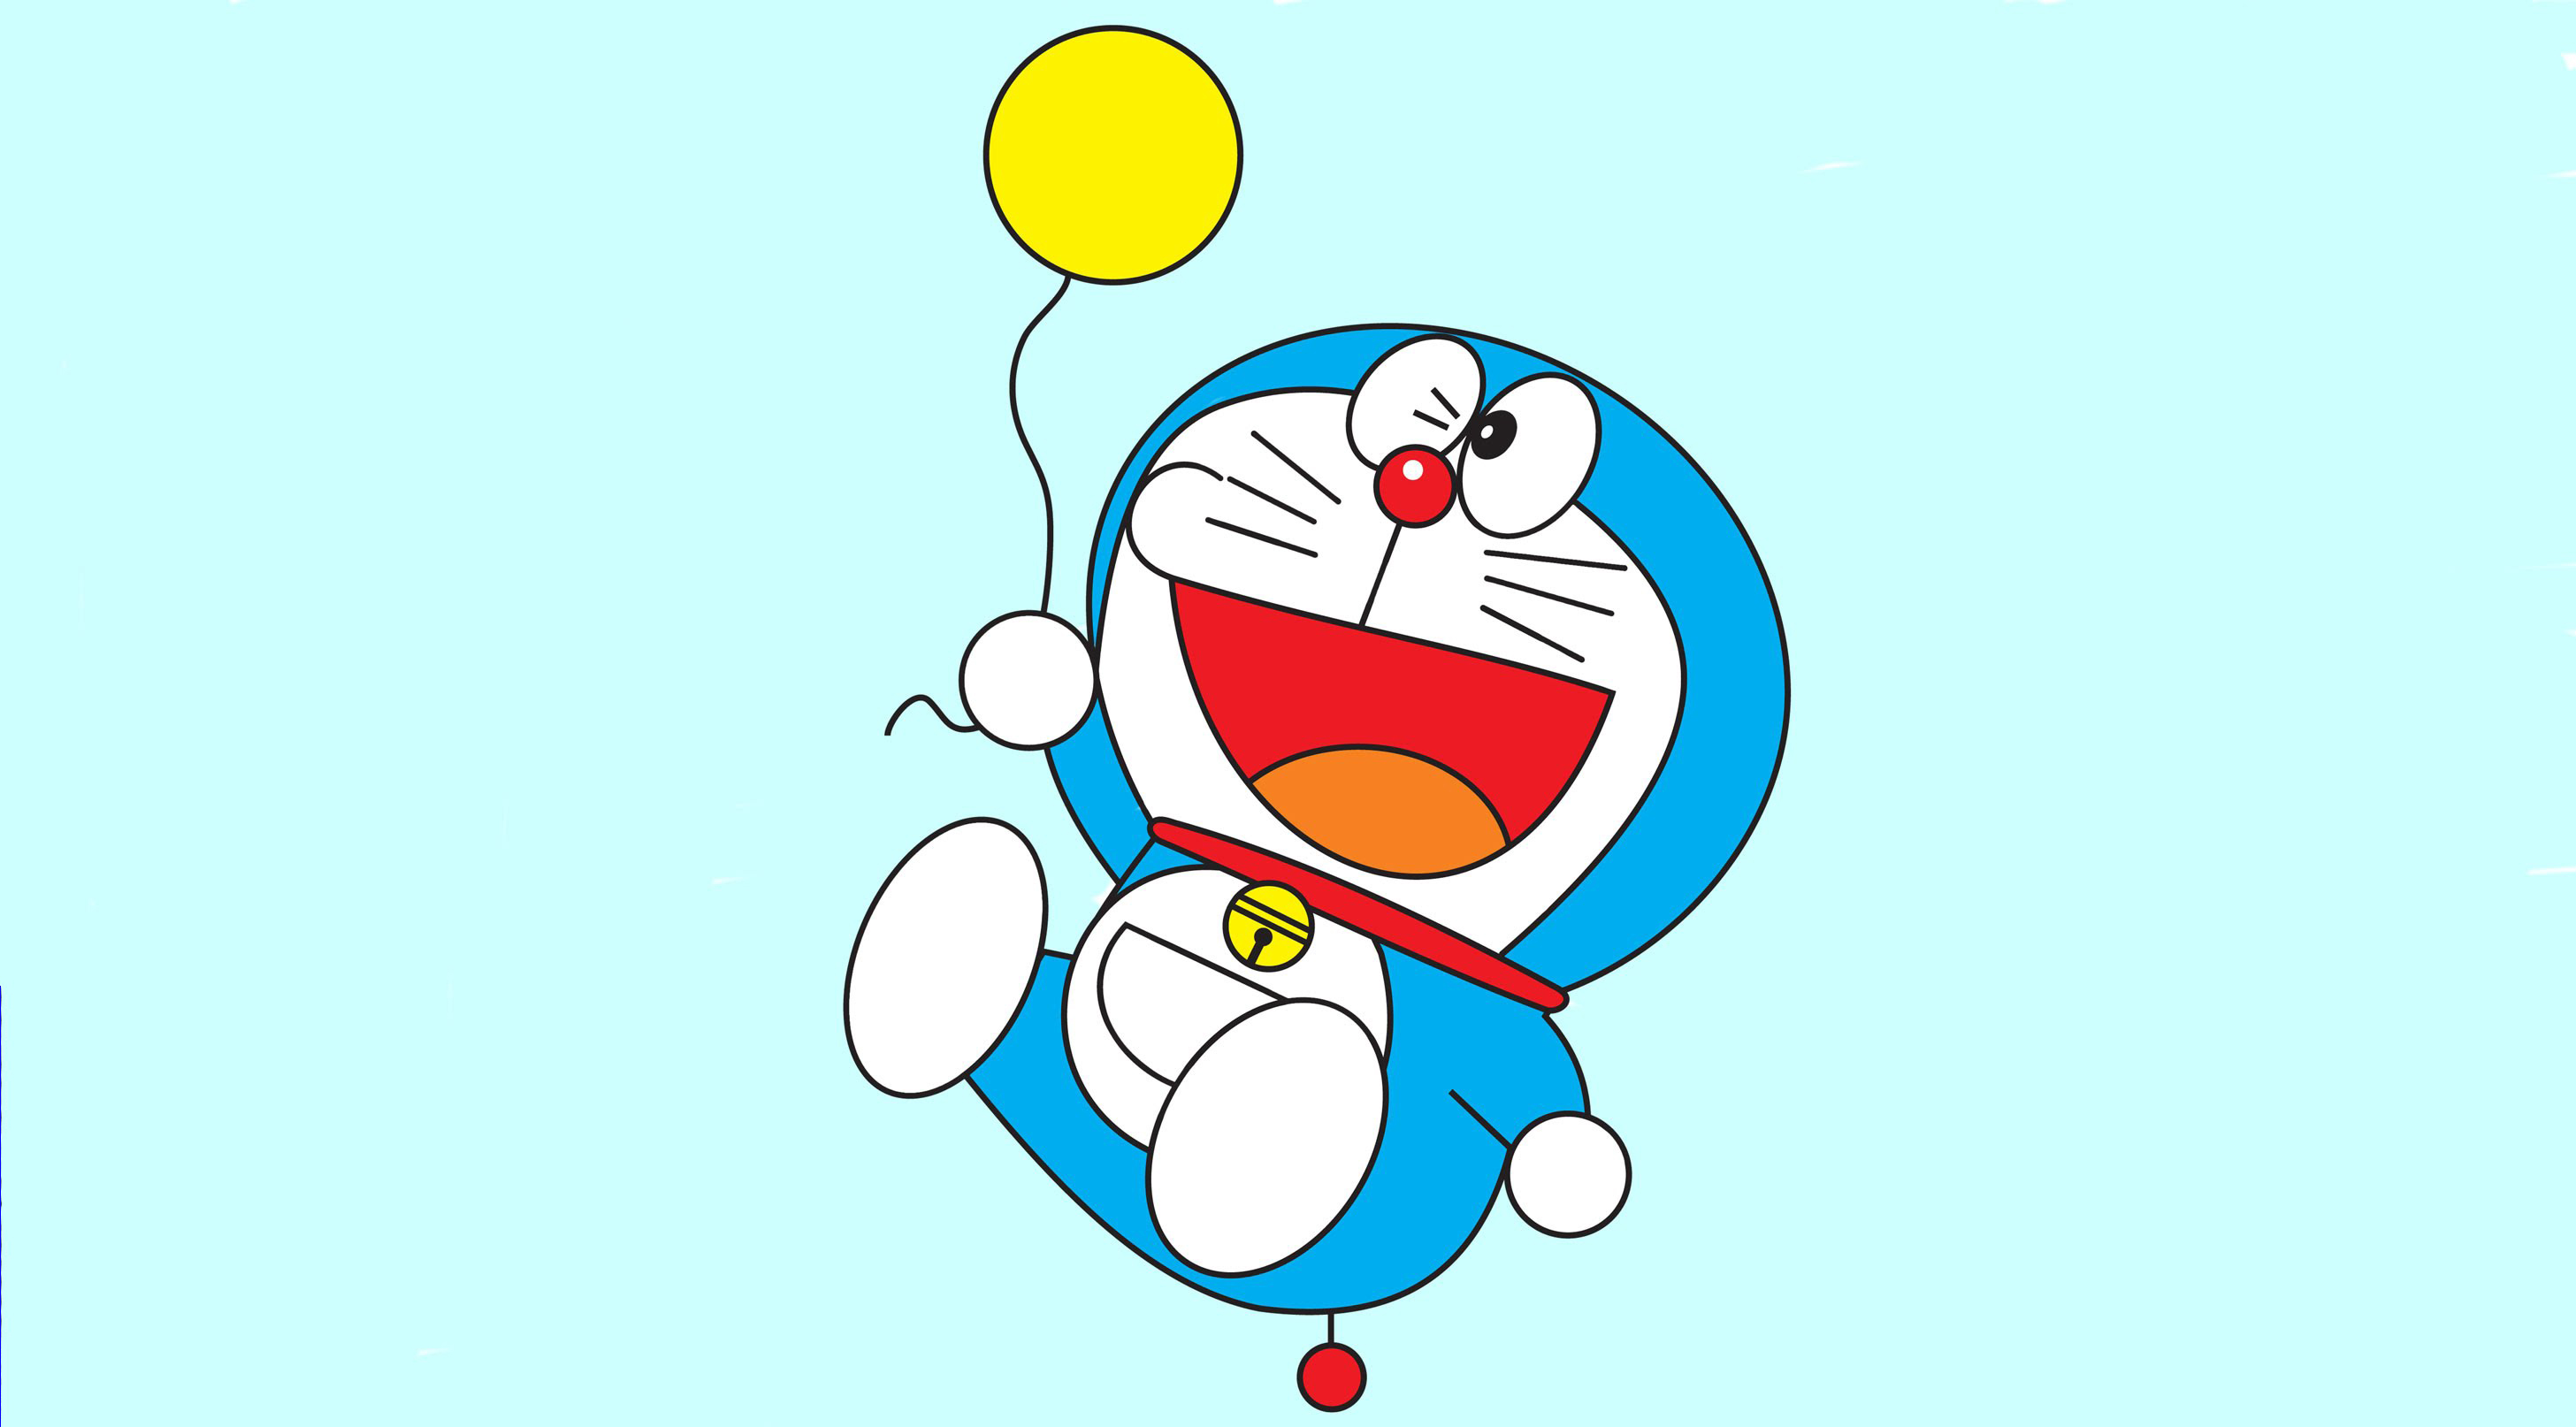 TOP 100 Hình vẽ Doraemon cute được nhiều bạn nhỏ yêu thích